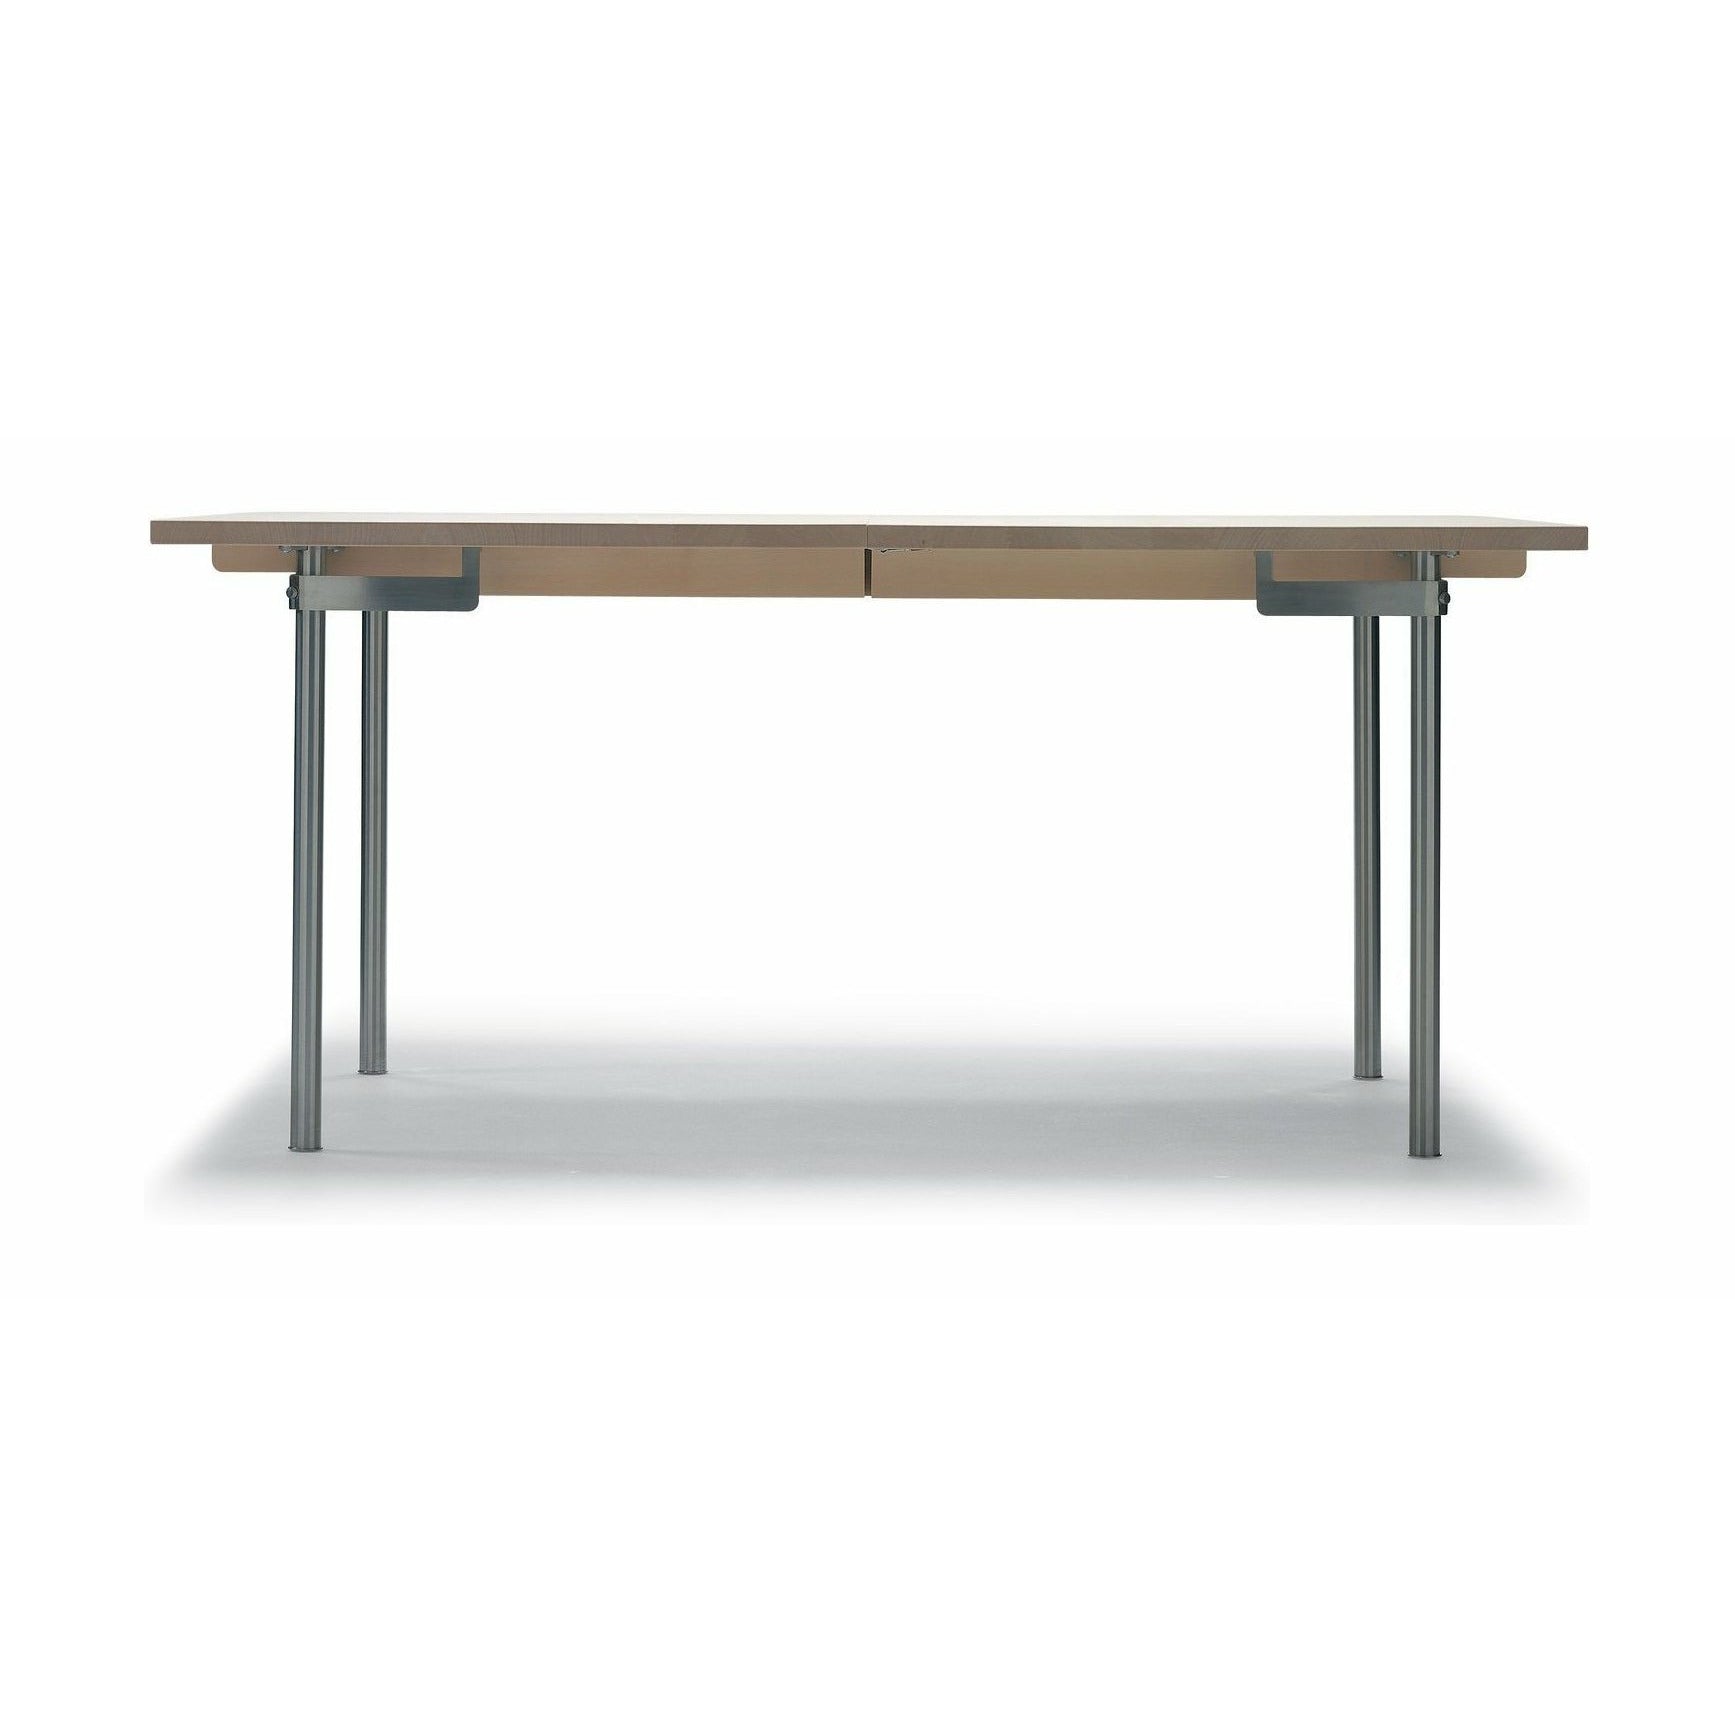 Carl Hansen CH322 matbord inkl. 4 ytterligare plattor, stål/oljad ek